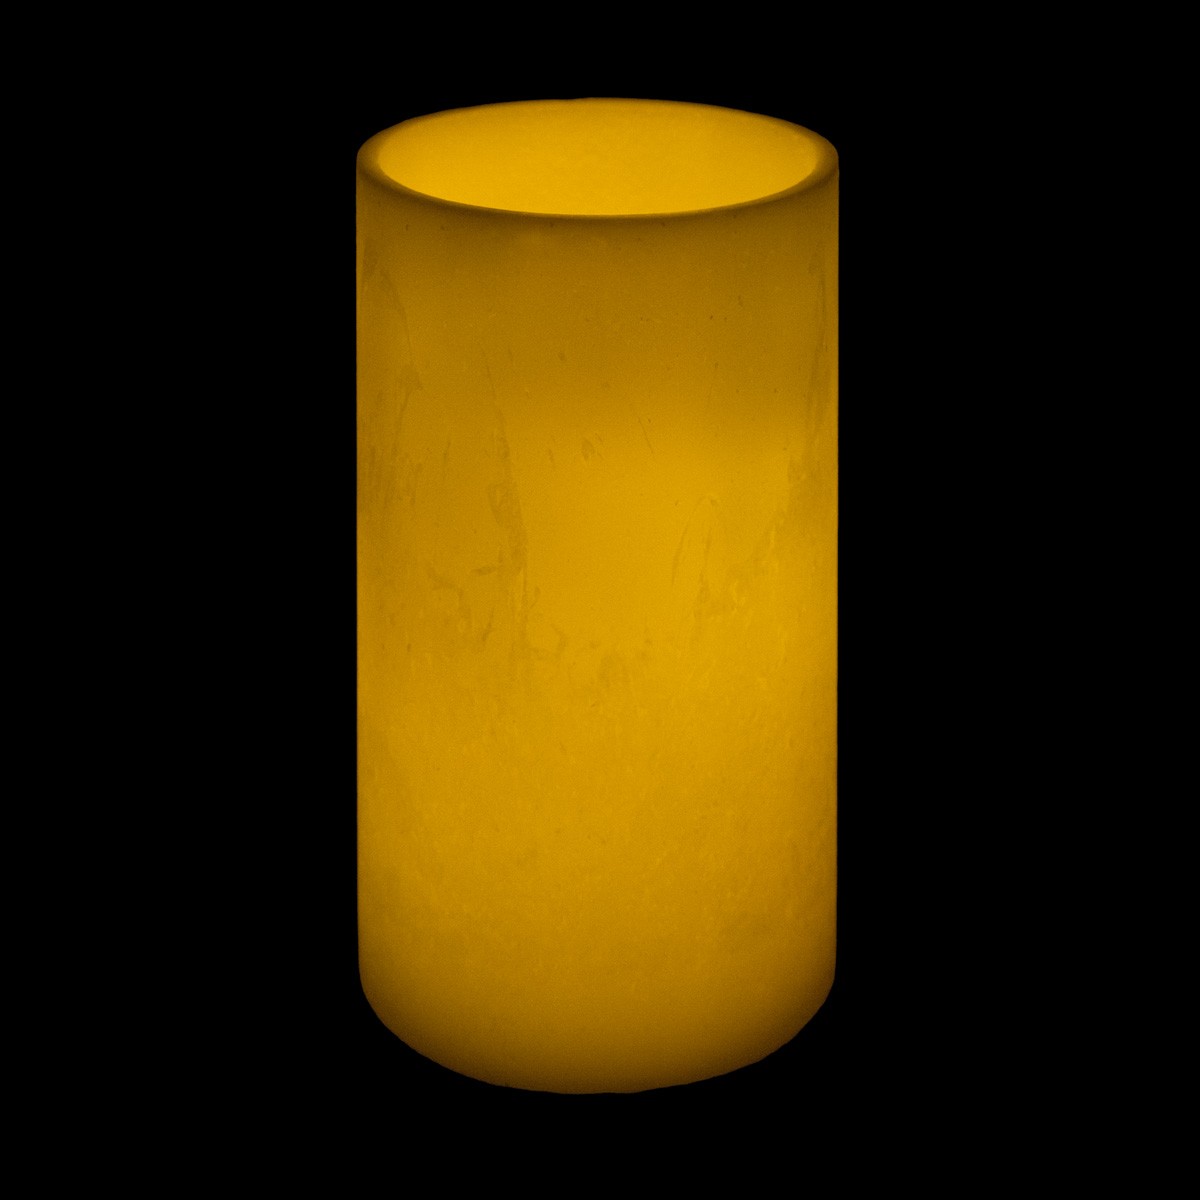 10x20 ivory round led flameless extra large pillar candles